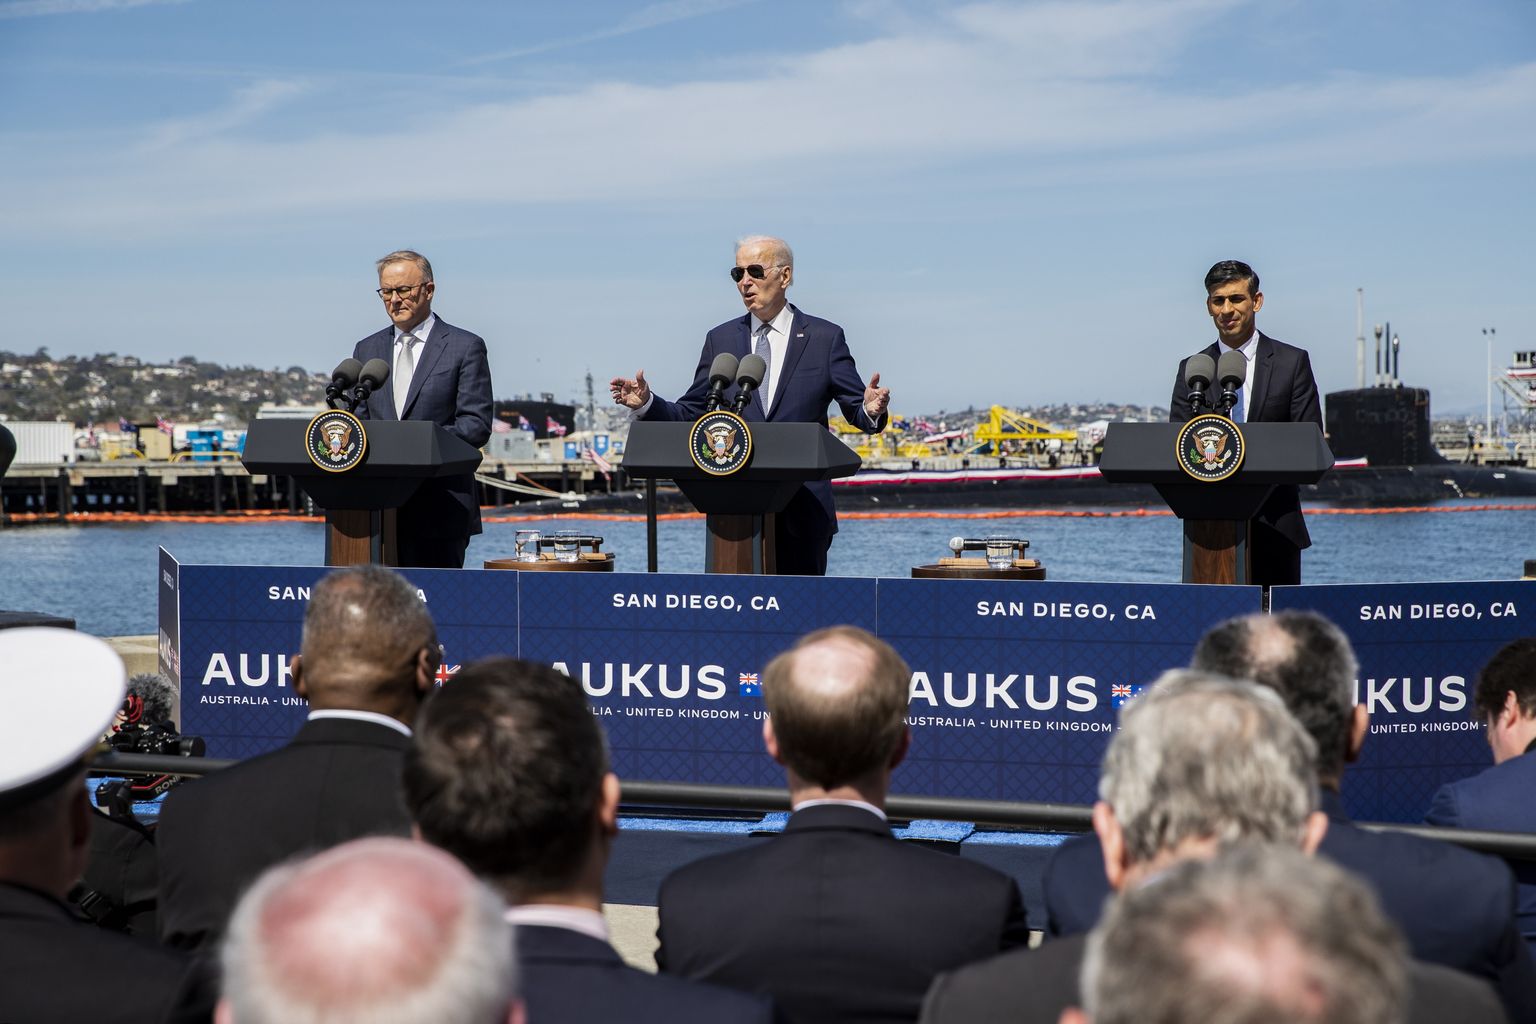 No kreisās: Austrālijas premjerministrs Entonijs Albanīzs, ASV prezidents Džo Baidens un Lielbritānijas premjerministrs Riši Sunaks tikšanās laikā Kalifornijā.